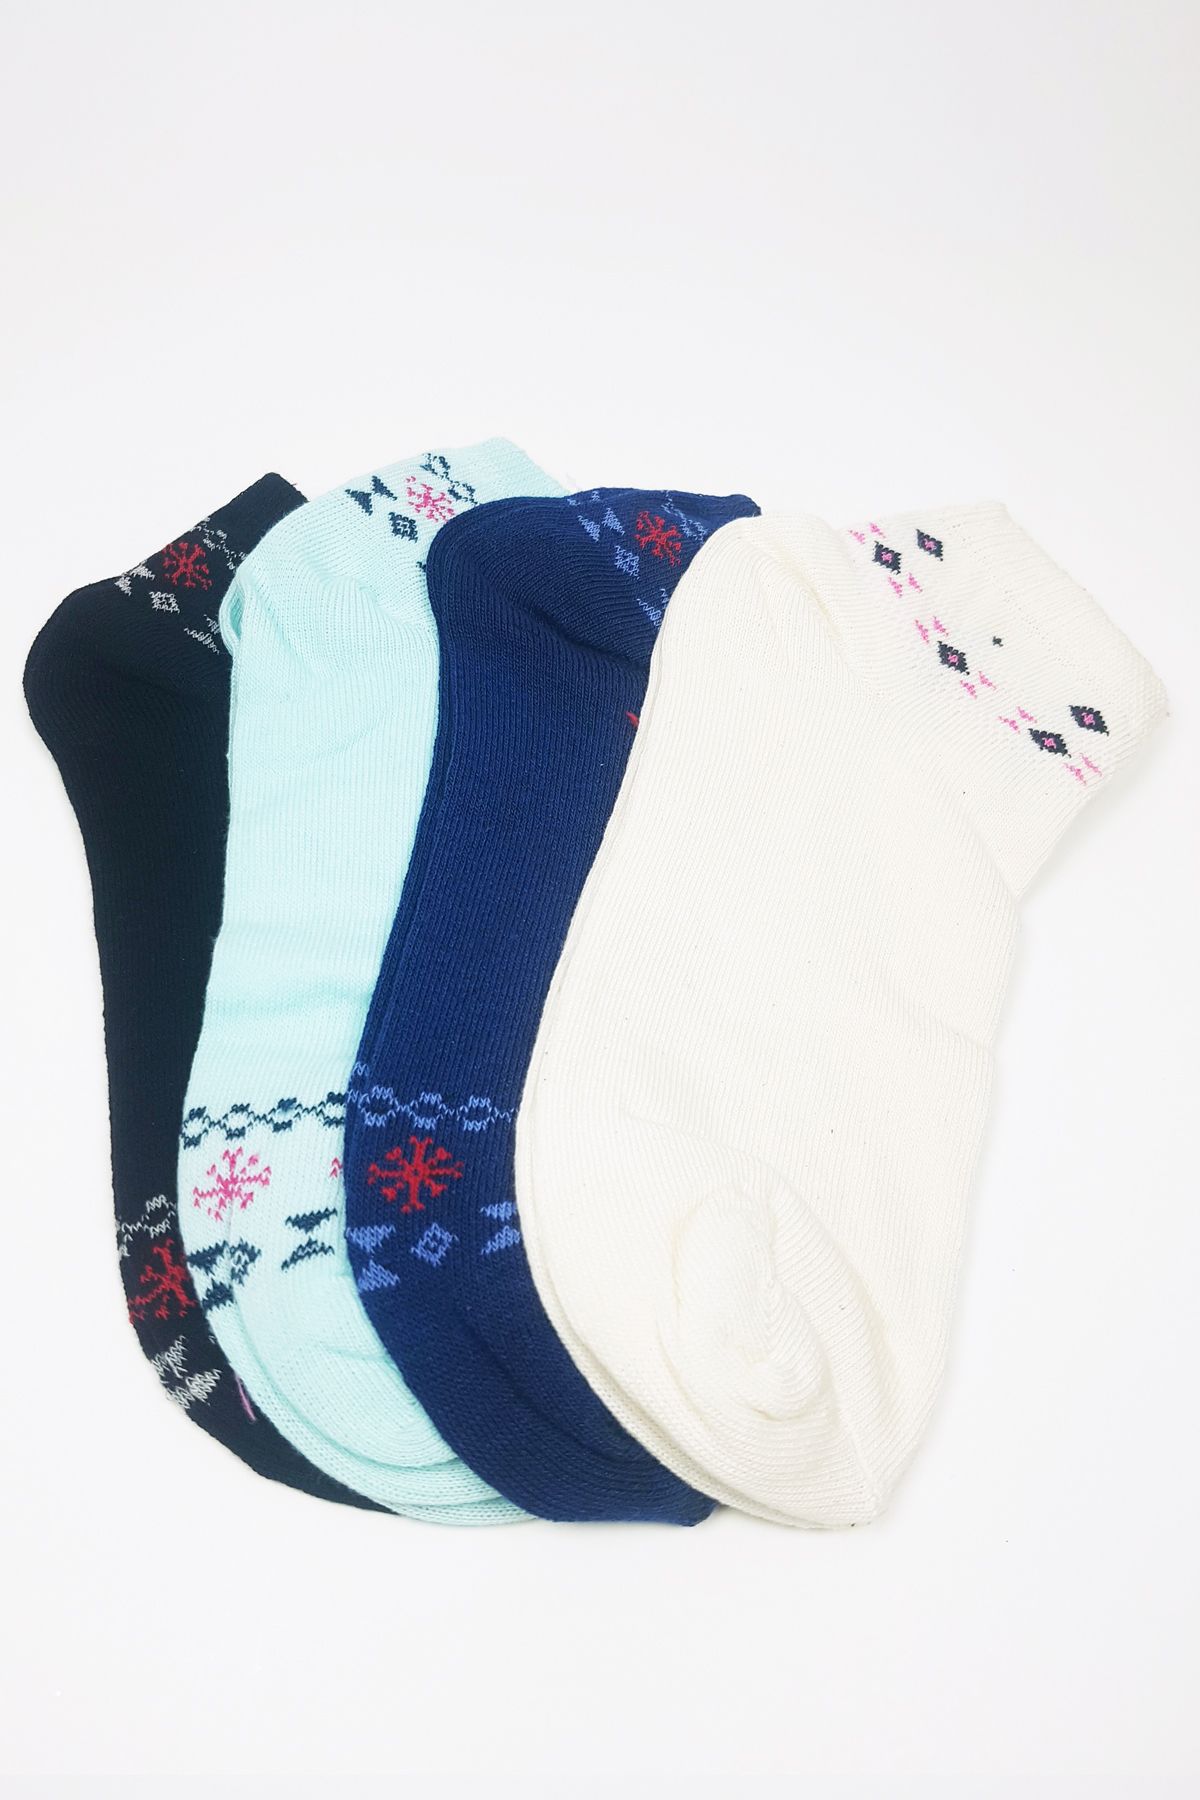 MENBOX TOPTANBULURUM Kadın Bilek Çorap Yazlık Pamuklu Yumuşak Düz Renk 4 Çift